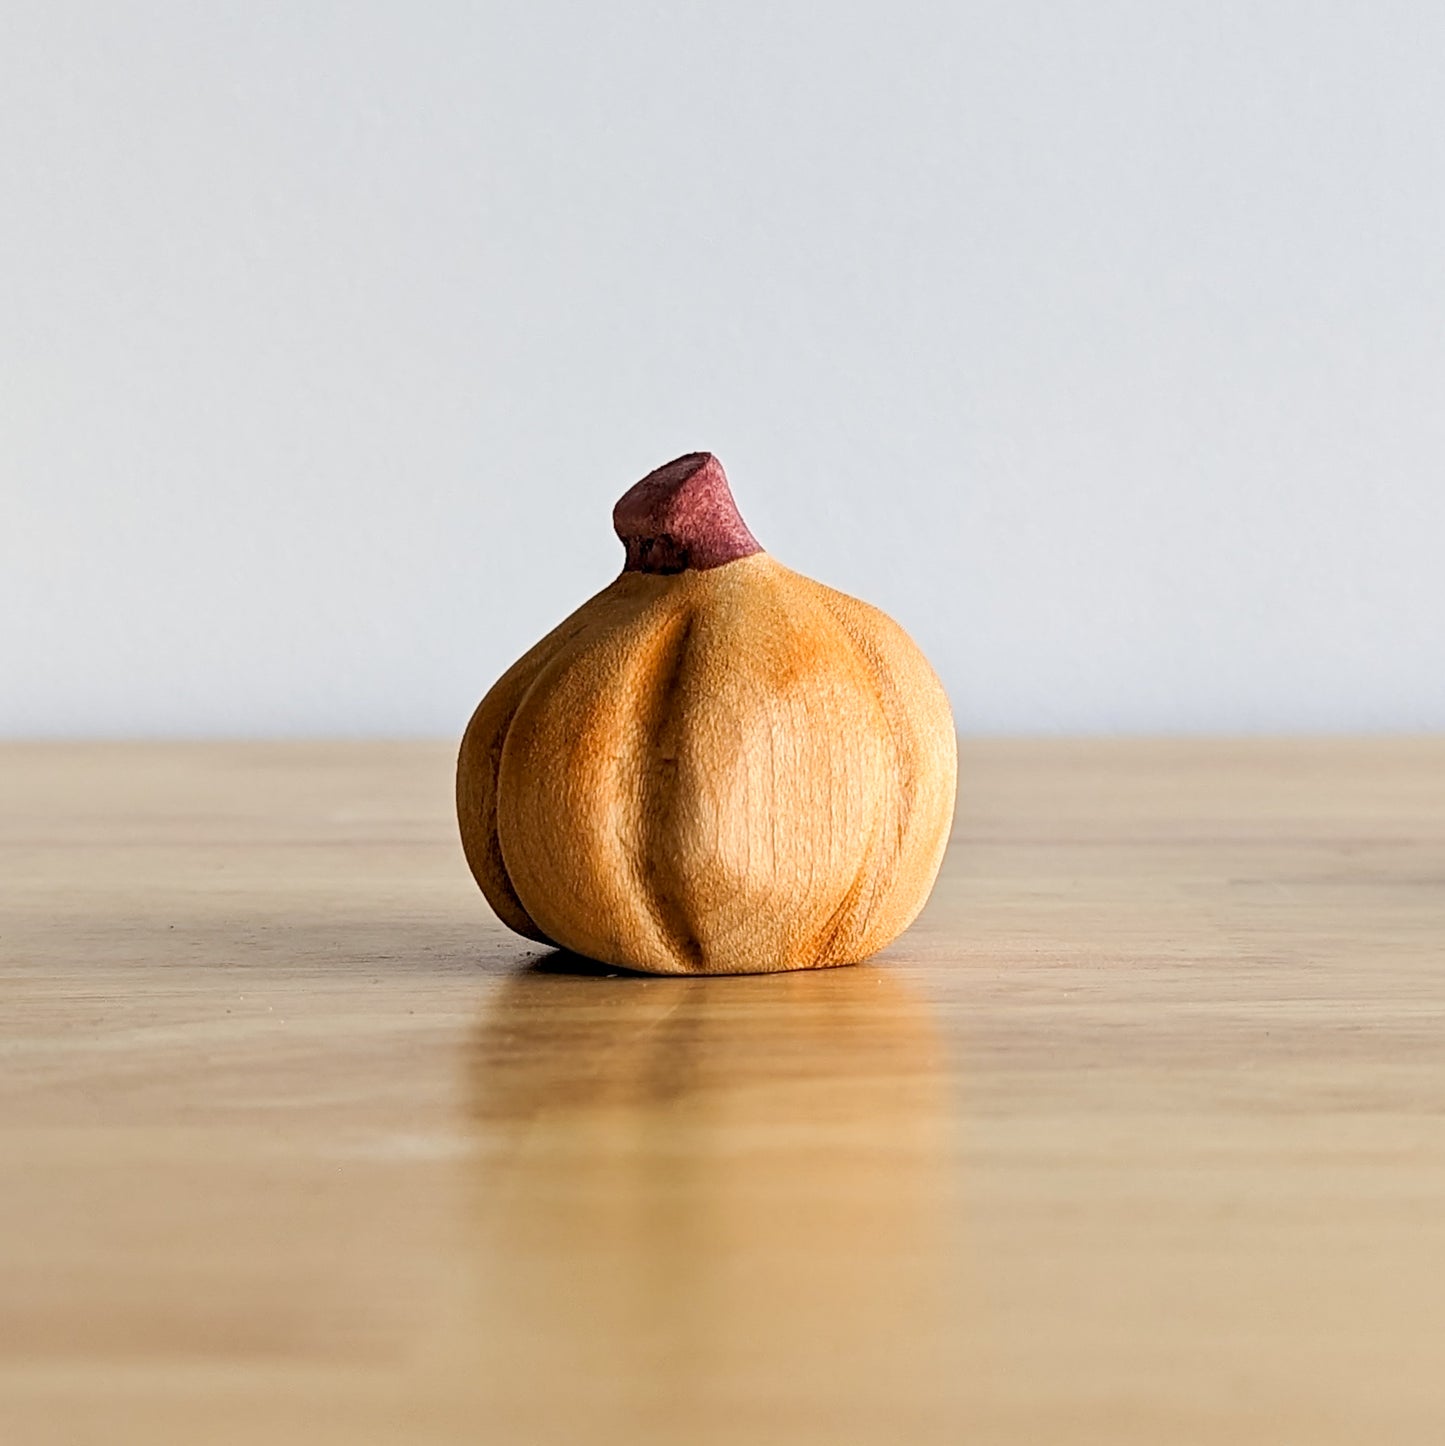 Pumpkin Wooden Toy